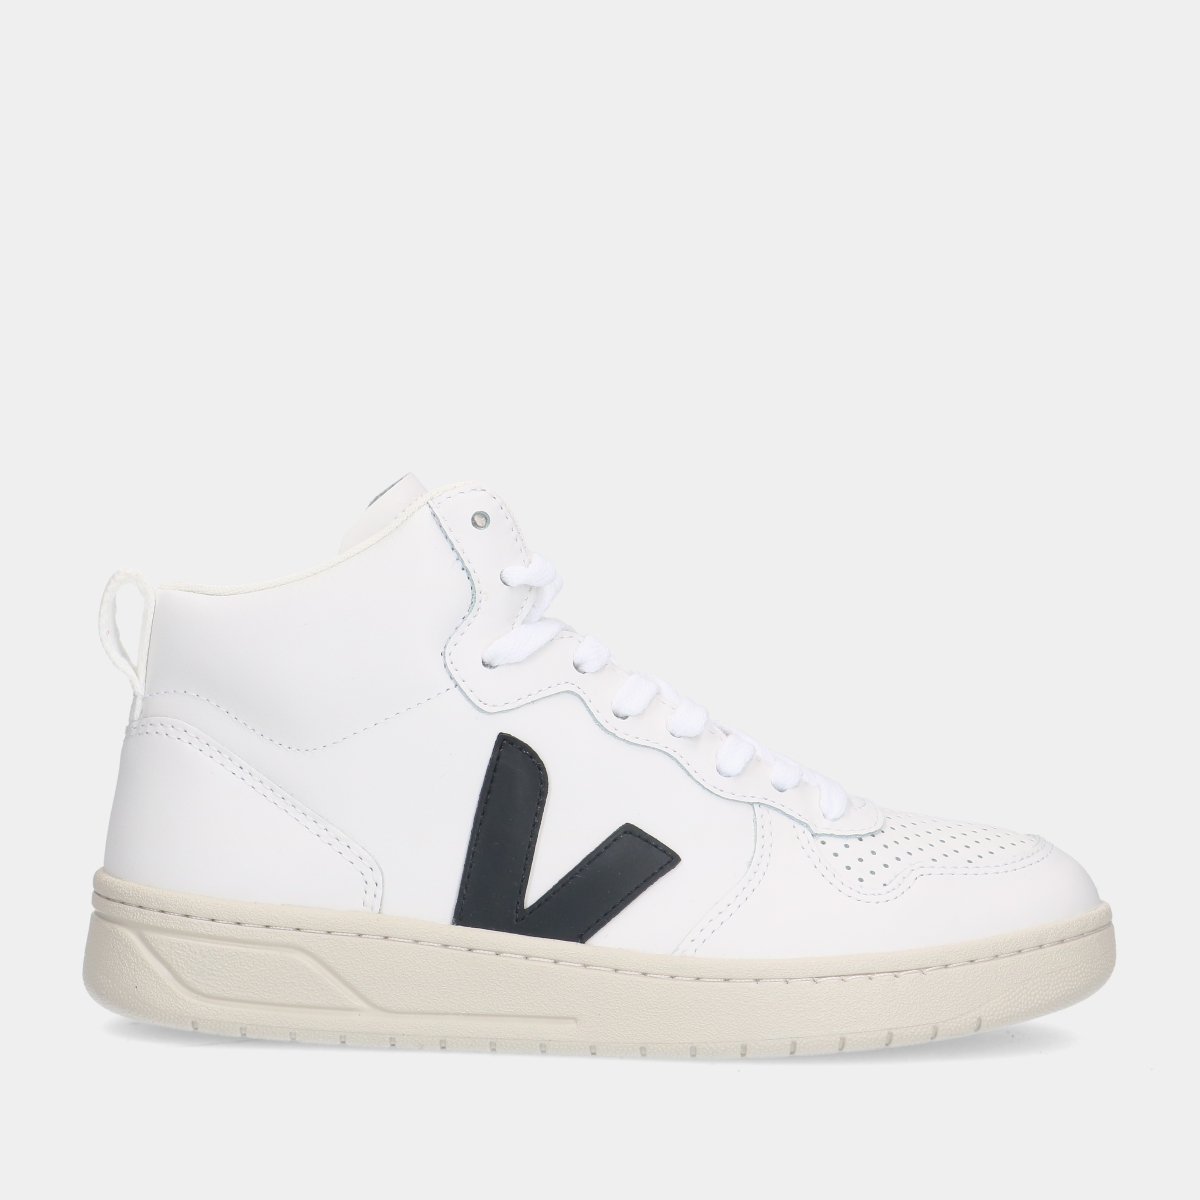 Veja V-15 Leather White/ Black sneakers